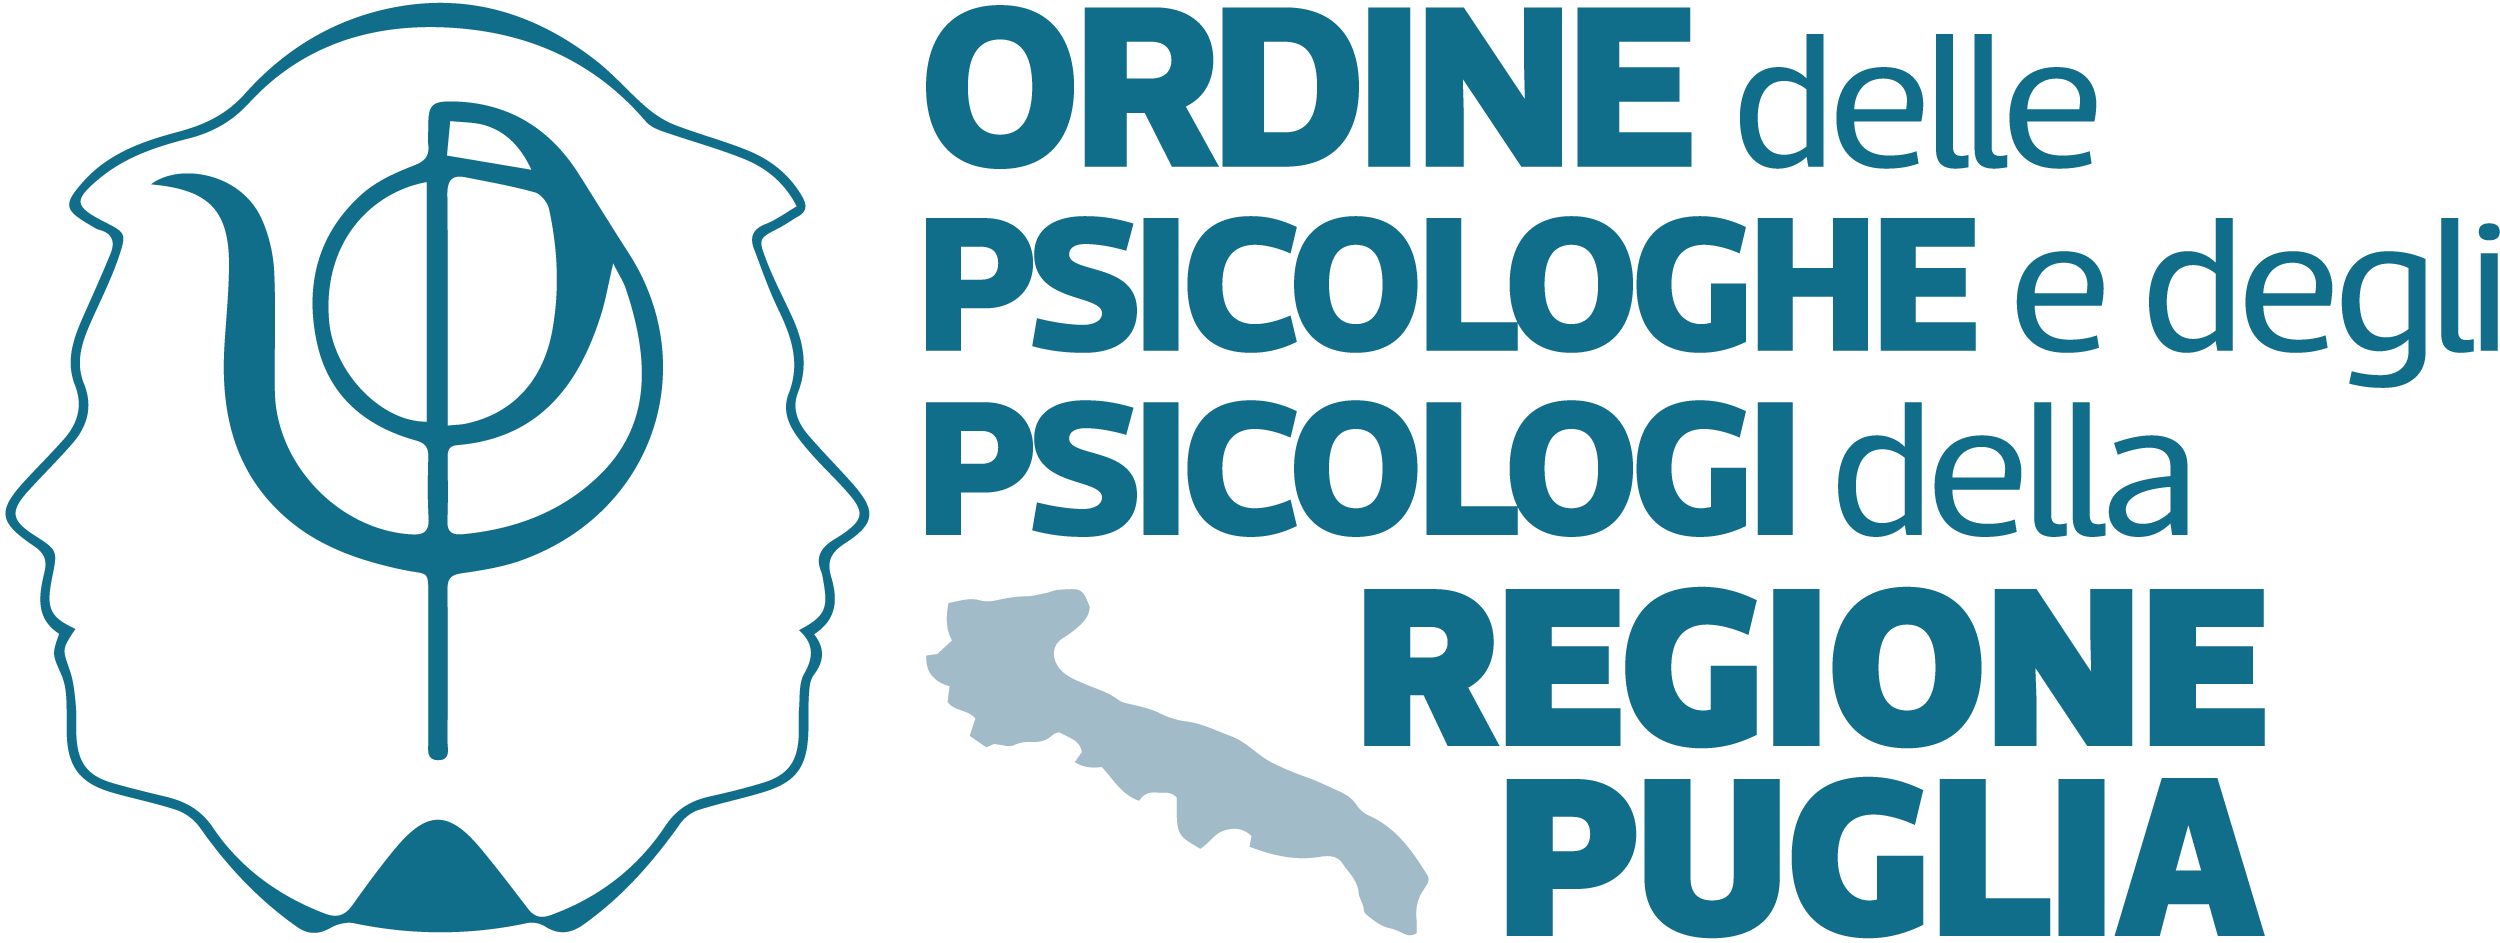 Ordine delle Psicologhe e degli Psicologi di Puglia